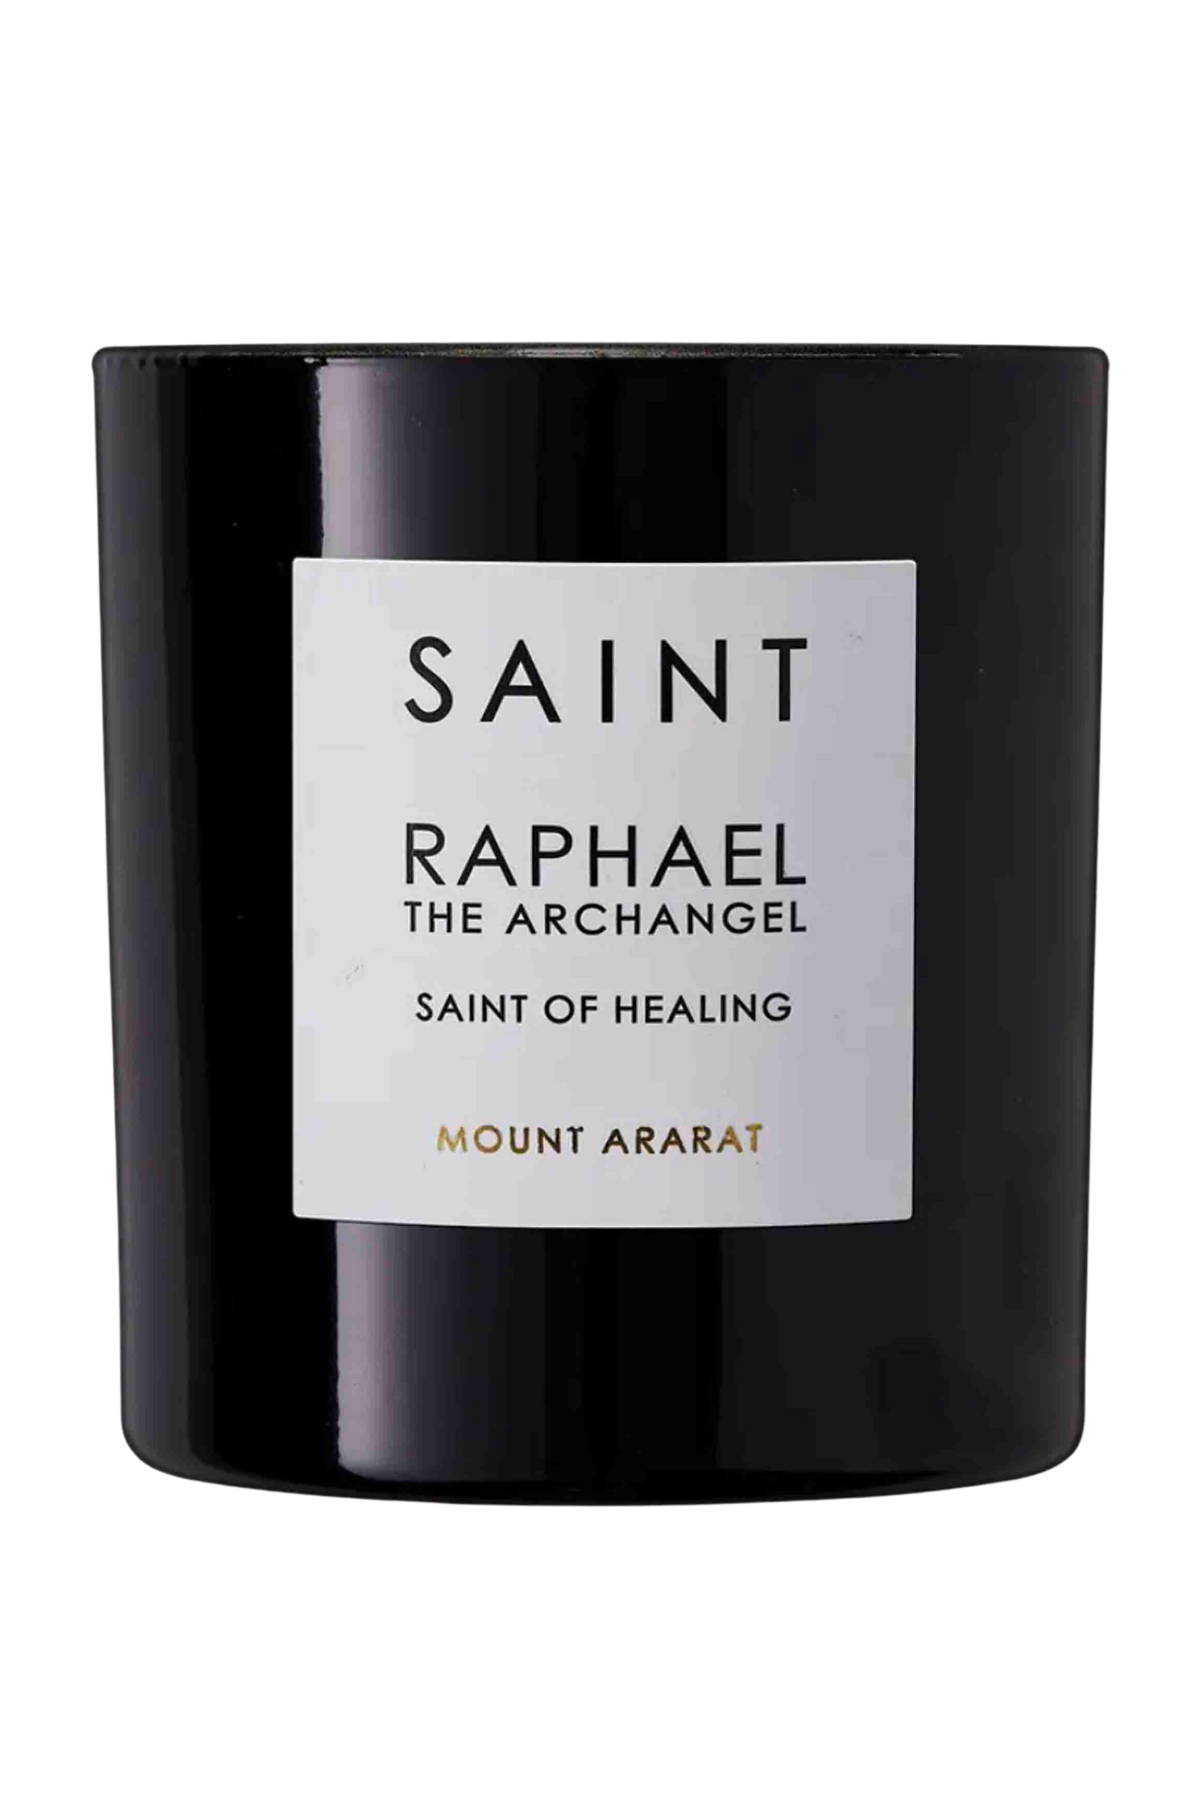 Saint Raphael the Archangel Candle by Saint